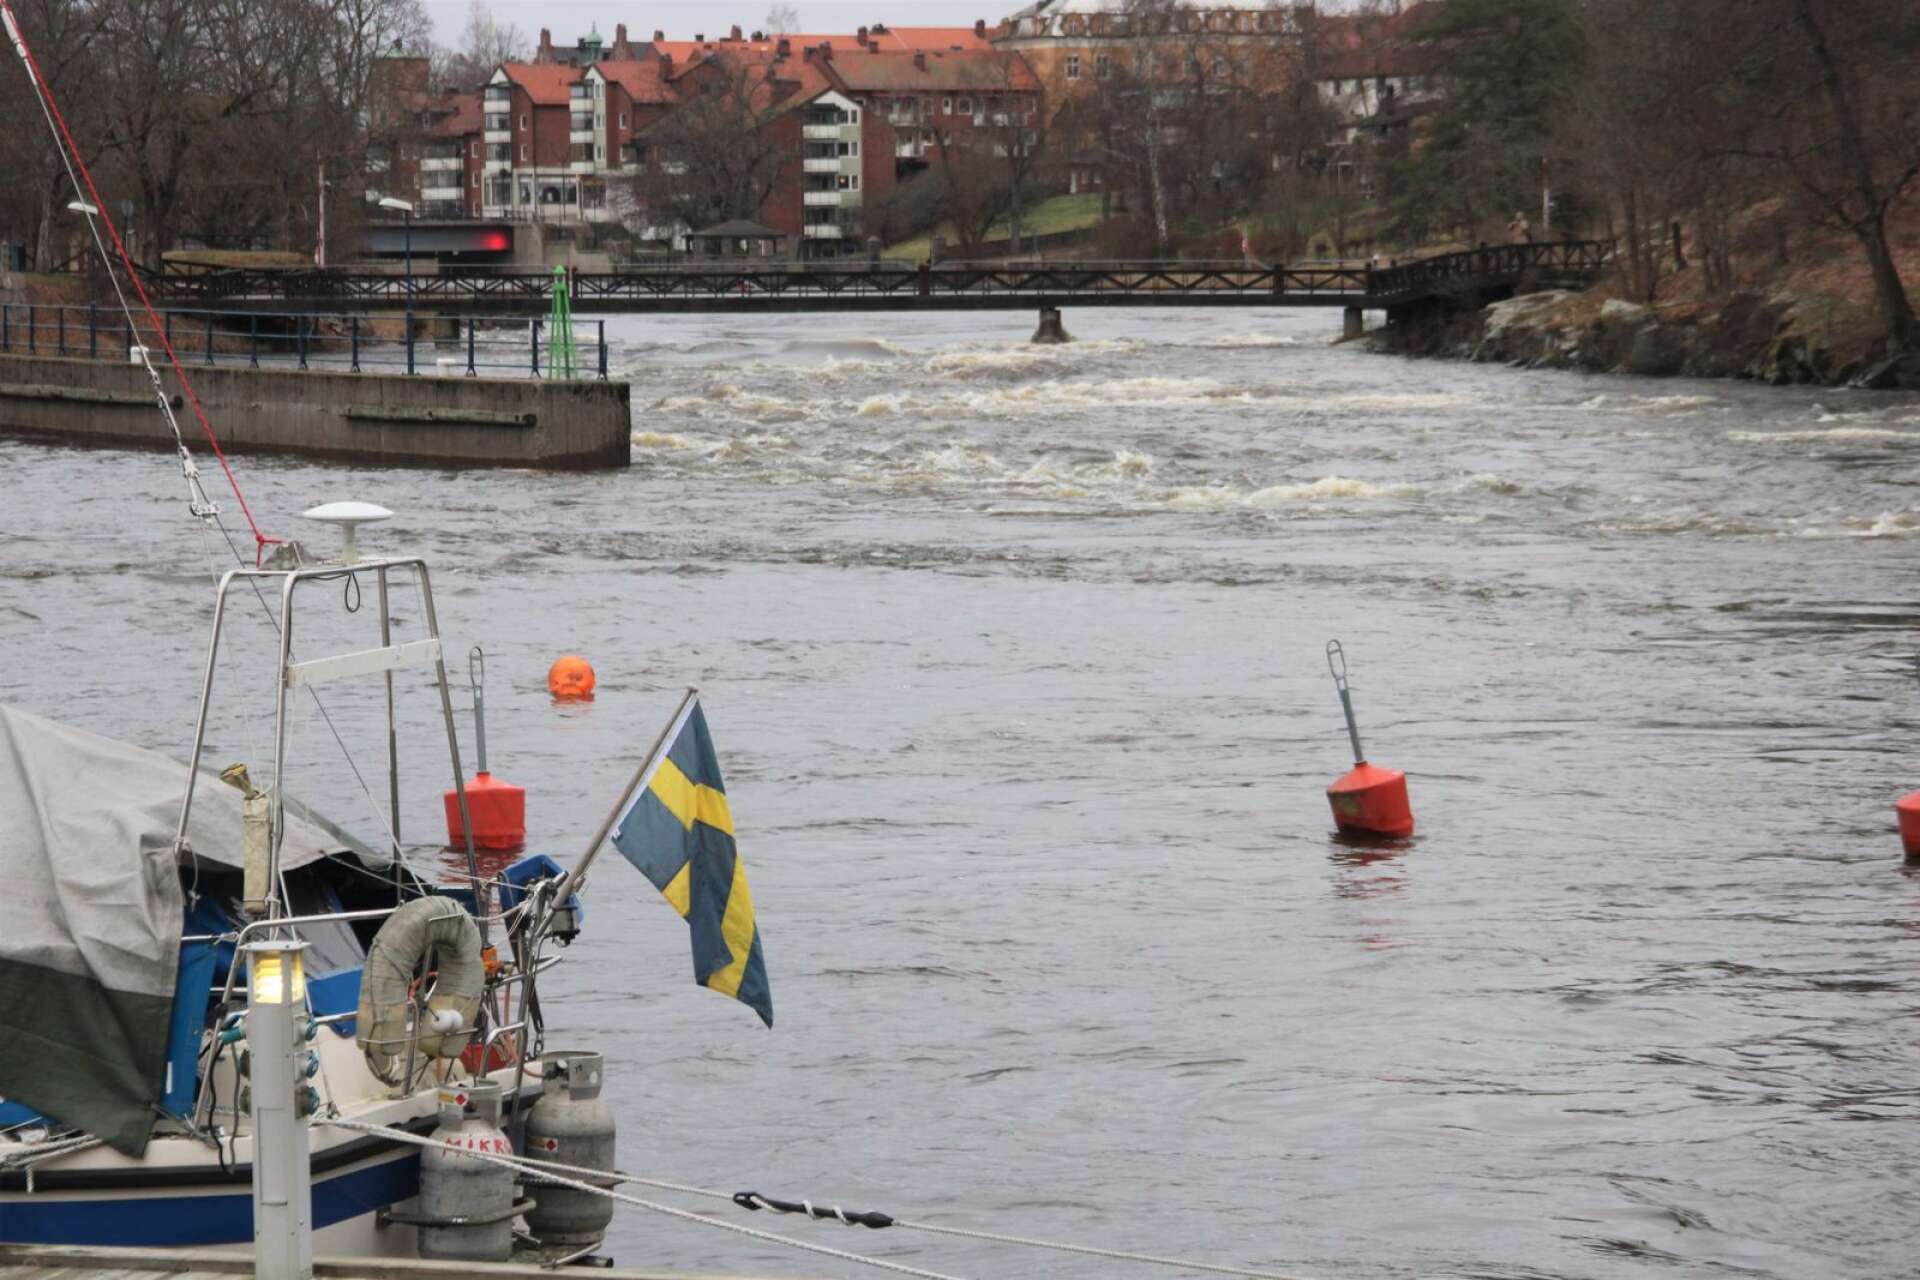 Byälvens vattennivå sjunker sakta men strömmen i Säffle är stark-. Riksdagsledamoten Pål Jonsson (M) kräver nu besked av regeringen om hur Byälven ska skyddas från översvämning i framtiden.